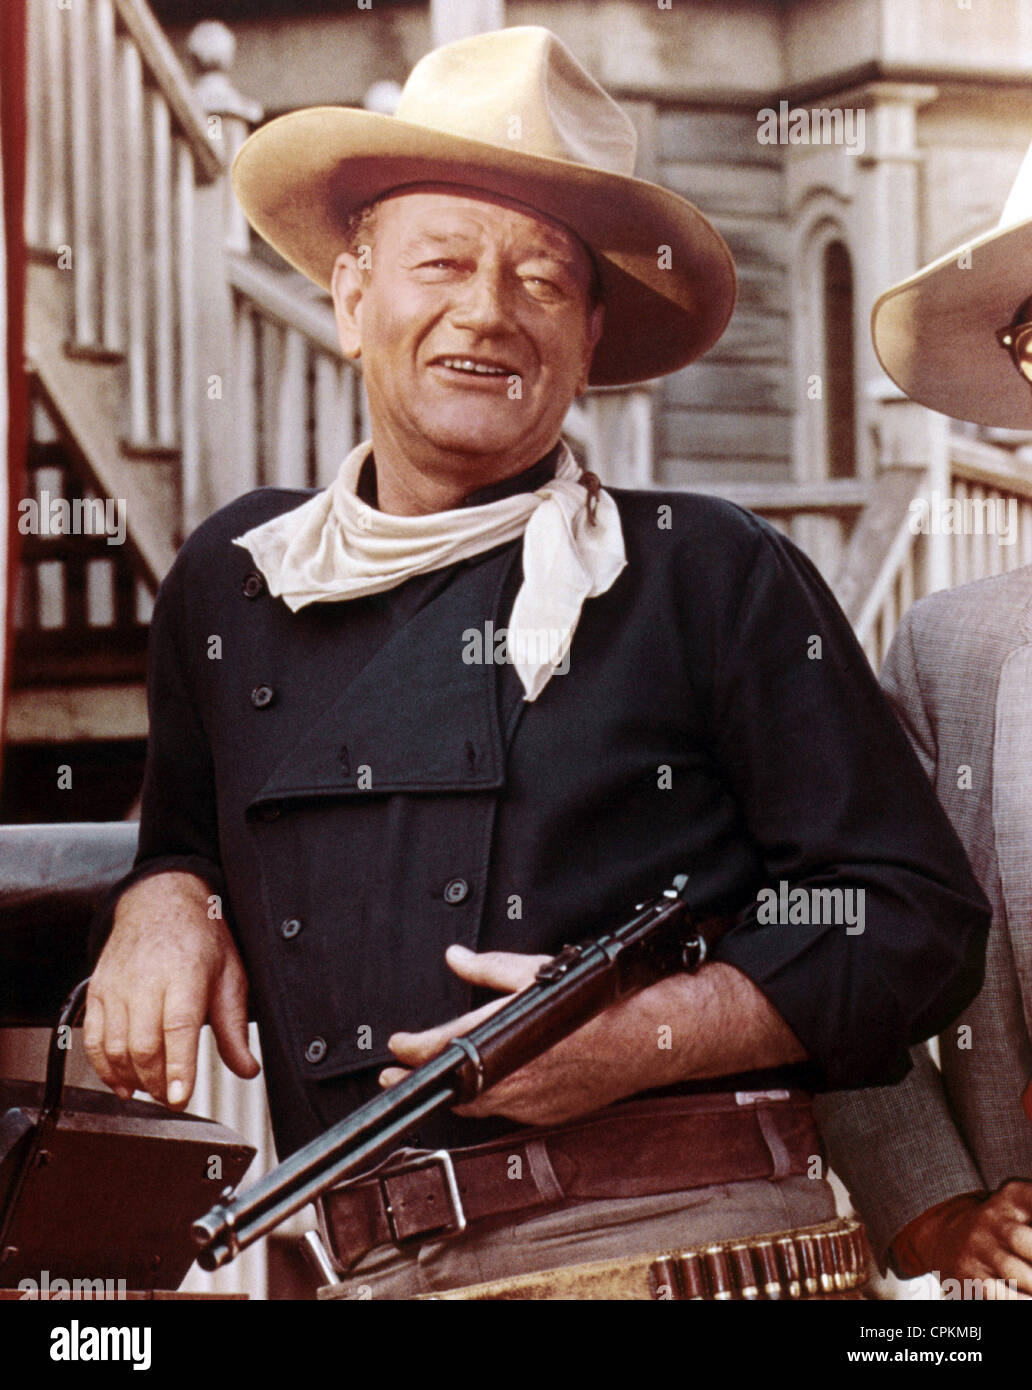 Un portrait de John Wayne avec fusil de cow-boy dans l'ouest de film. Banque D'Images